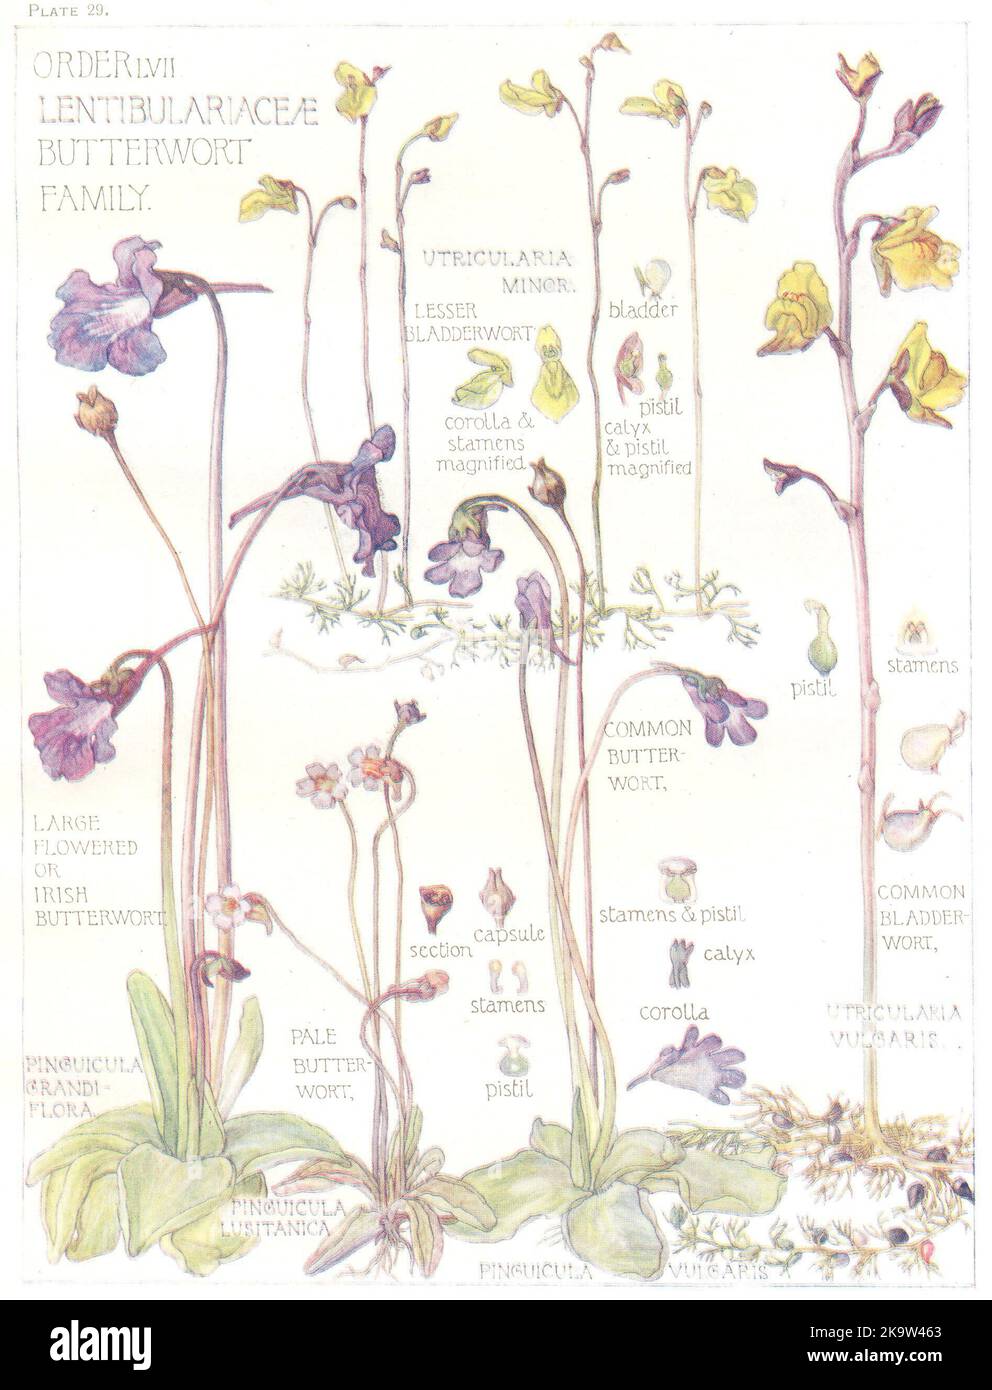 BUTTERKRAUT. Kleiner; große blühende Irisch; gewöhnlich; blassen; Bladderwort 1907-Druck Stockfoto